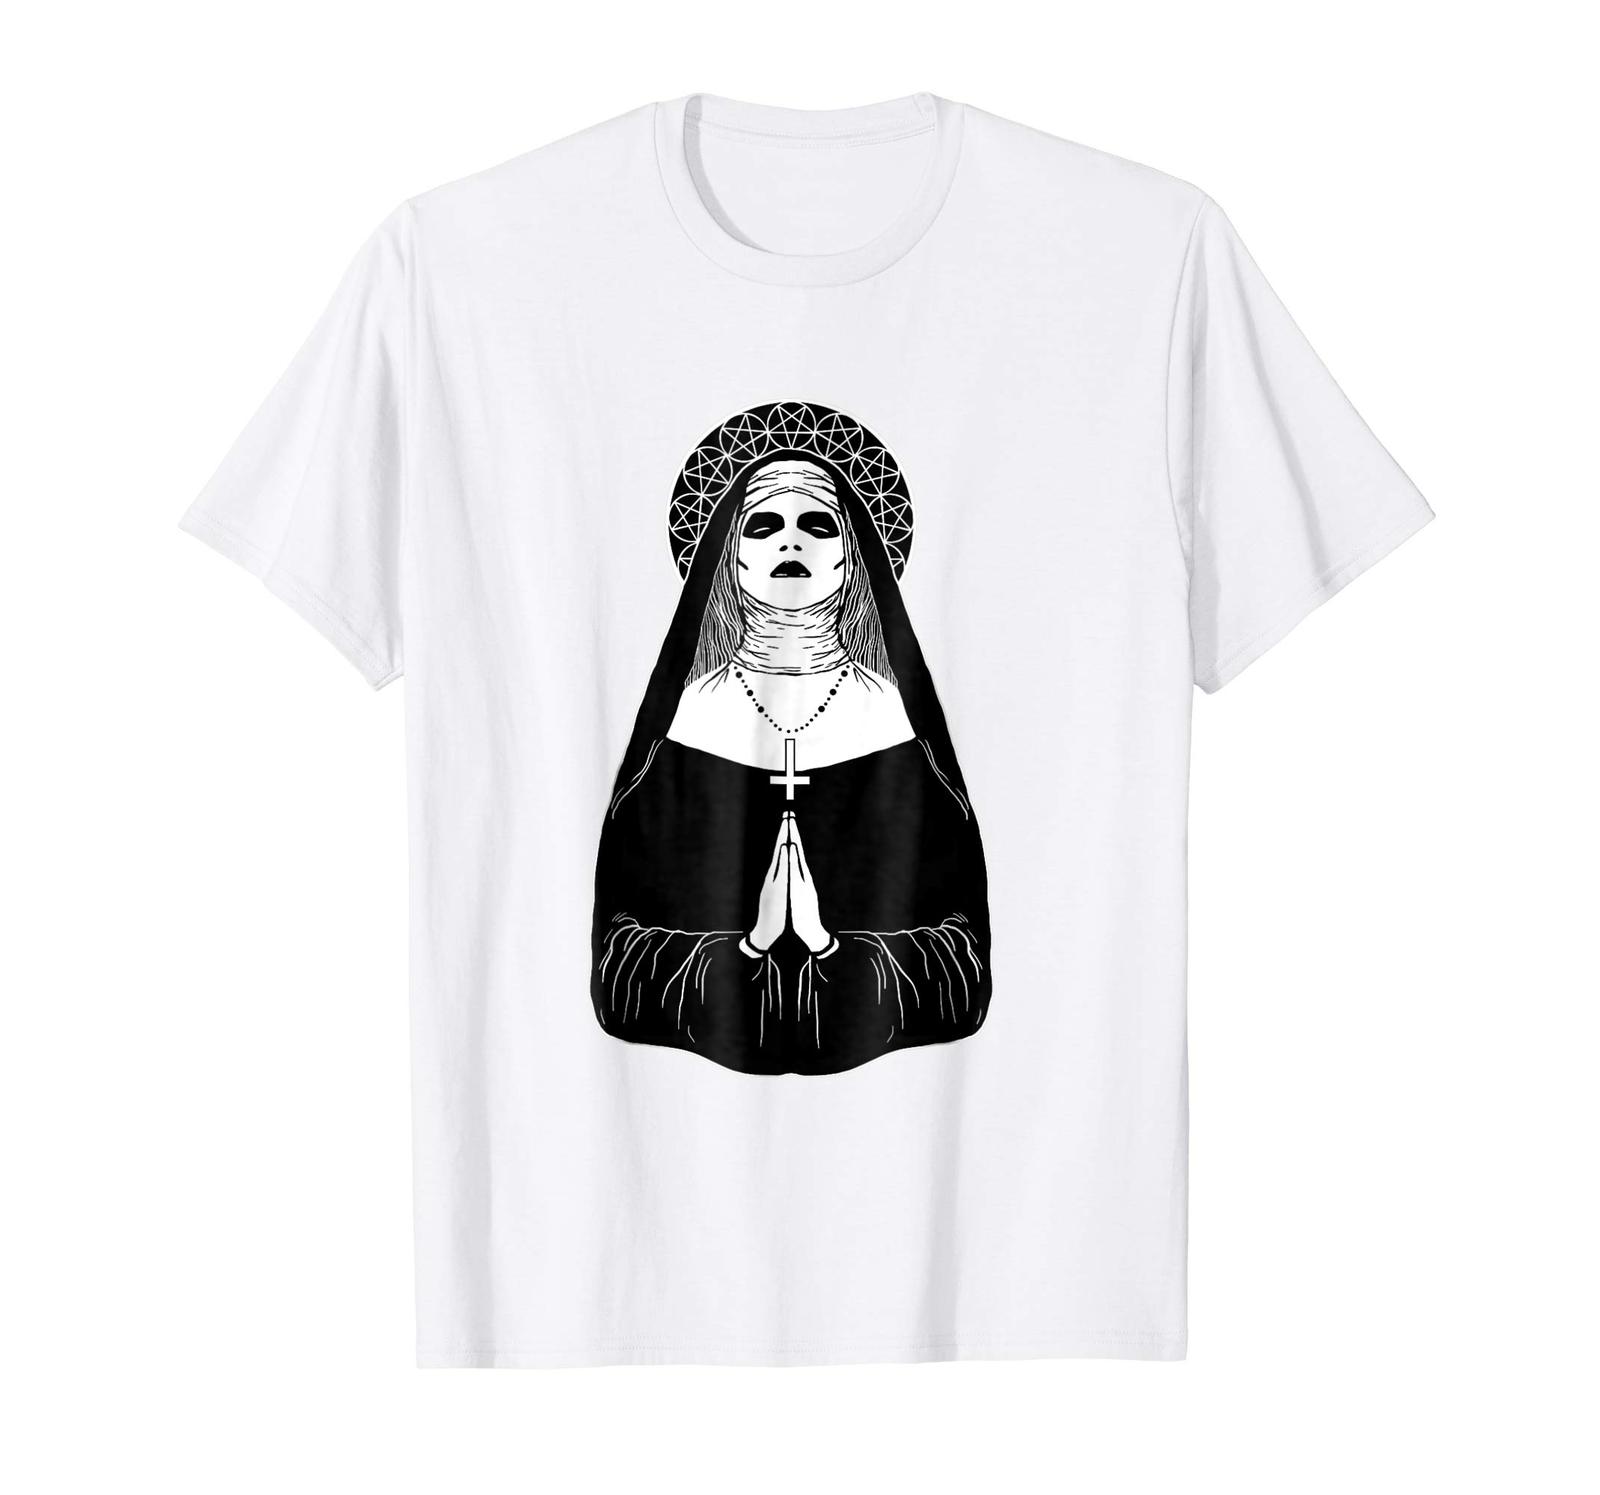 Funny Shirts - Satanic Occult Nun Tee Shirt Men - T-Shirts, Tank Tops